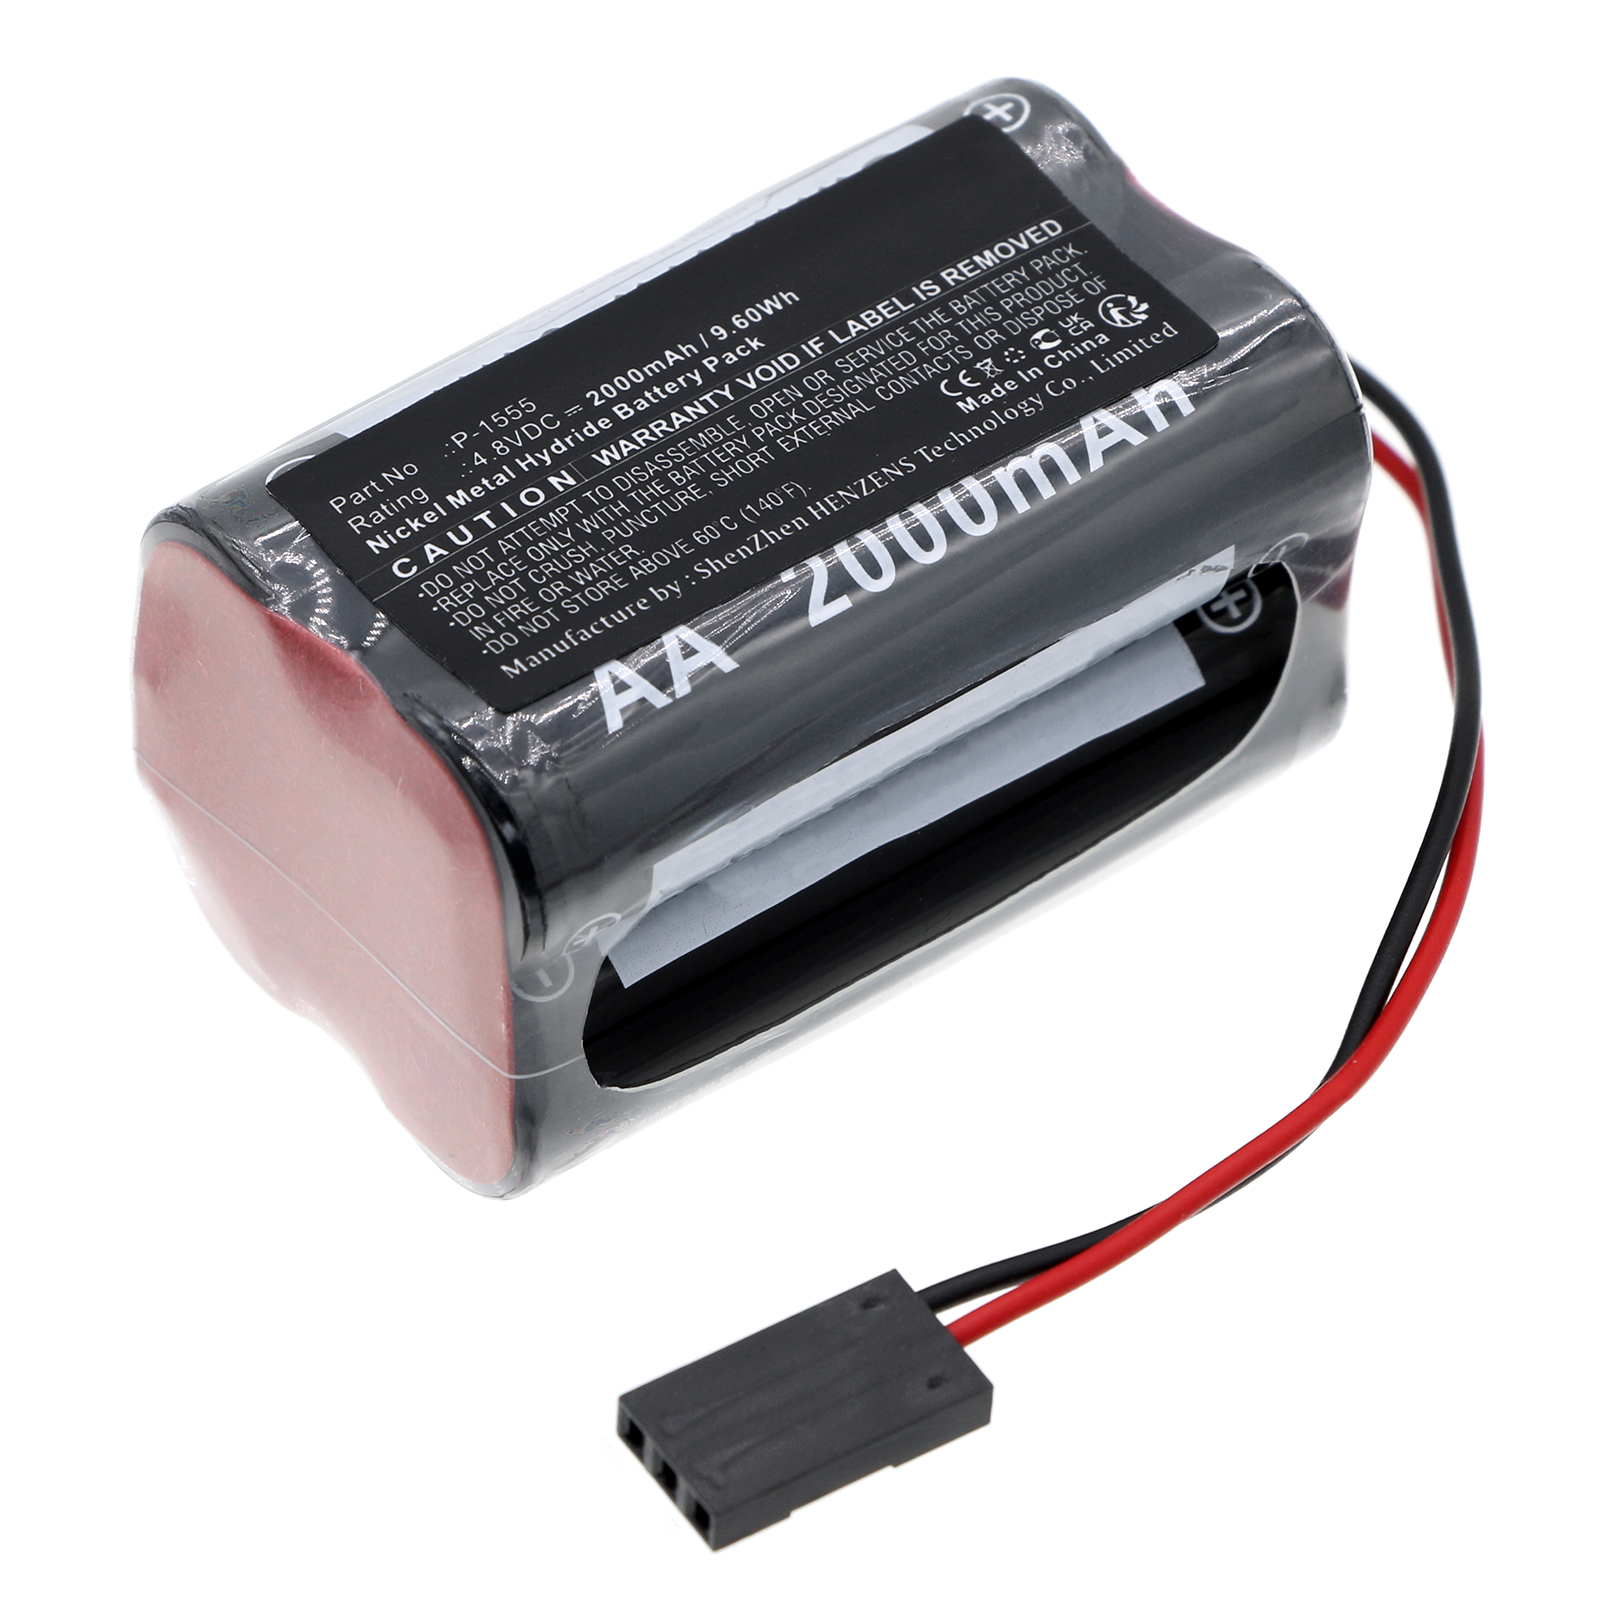 Synergy Digital Cash Register Battery, Compatible with EI Compact P-1555 Cash Register Battery (Ni-MH, 4.8V, 2000mAh)